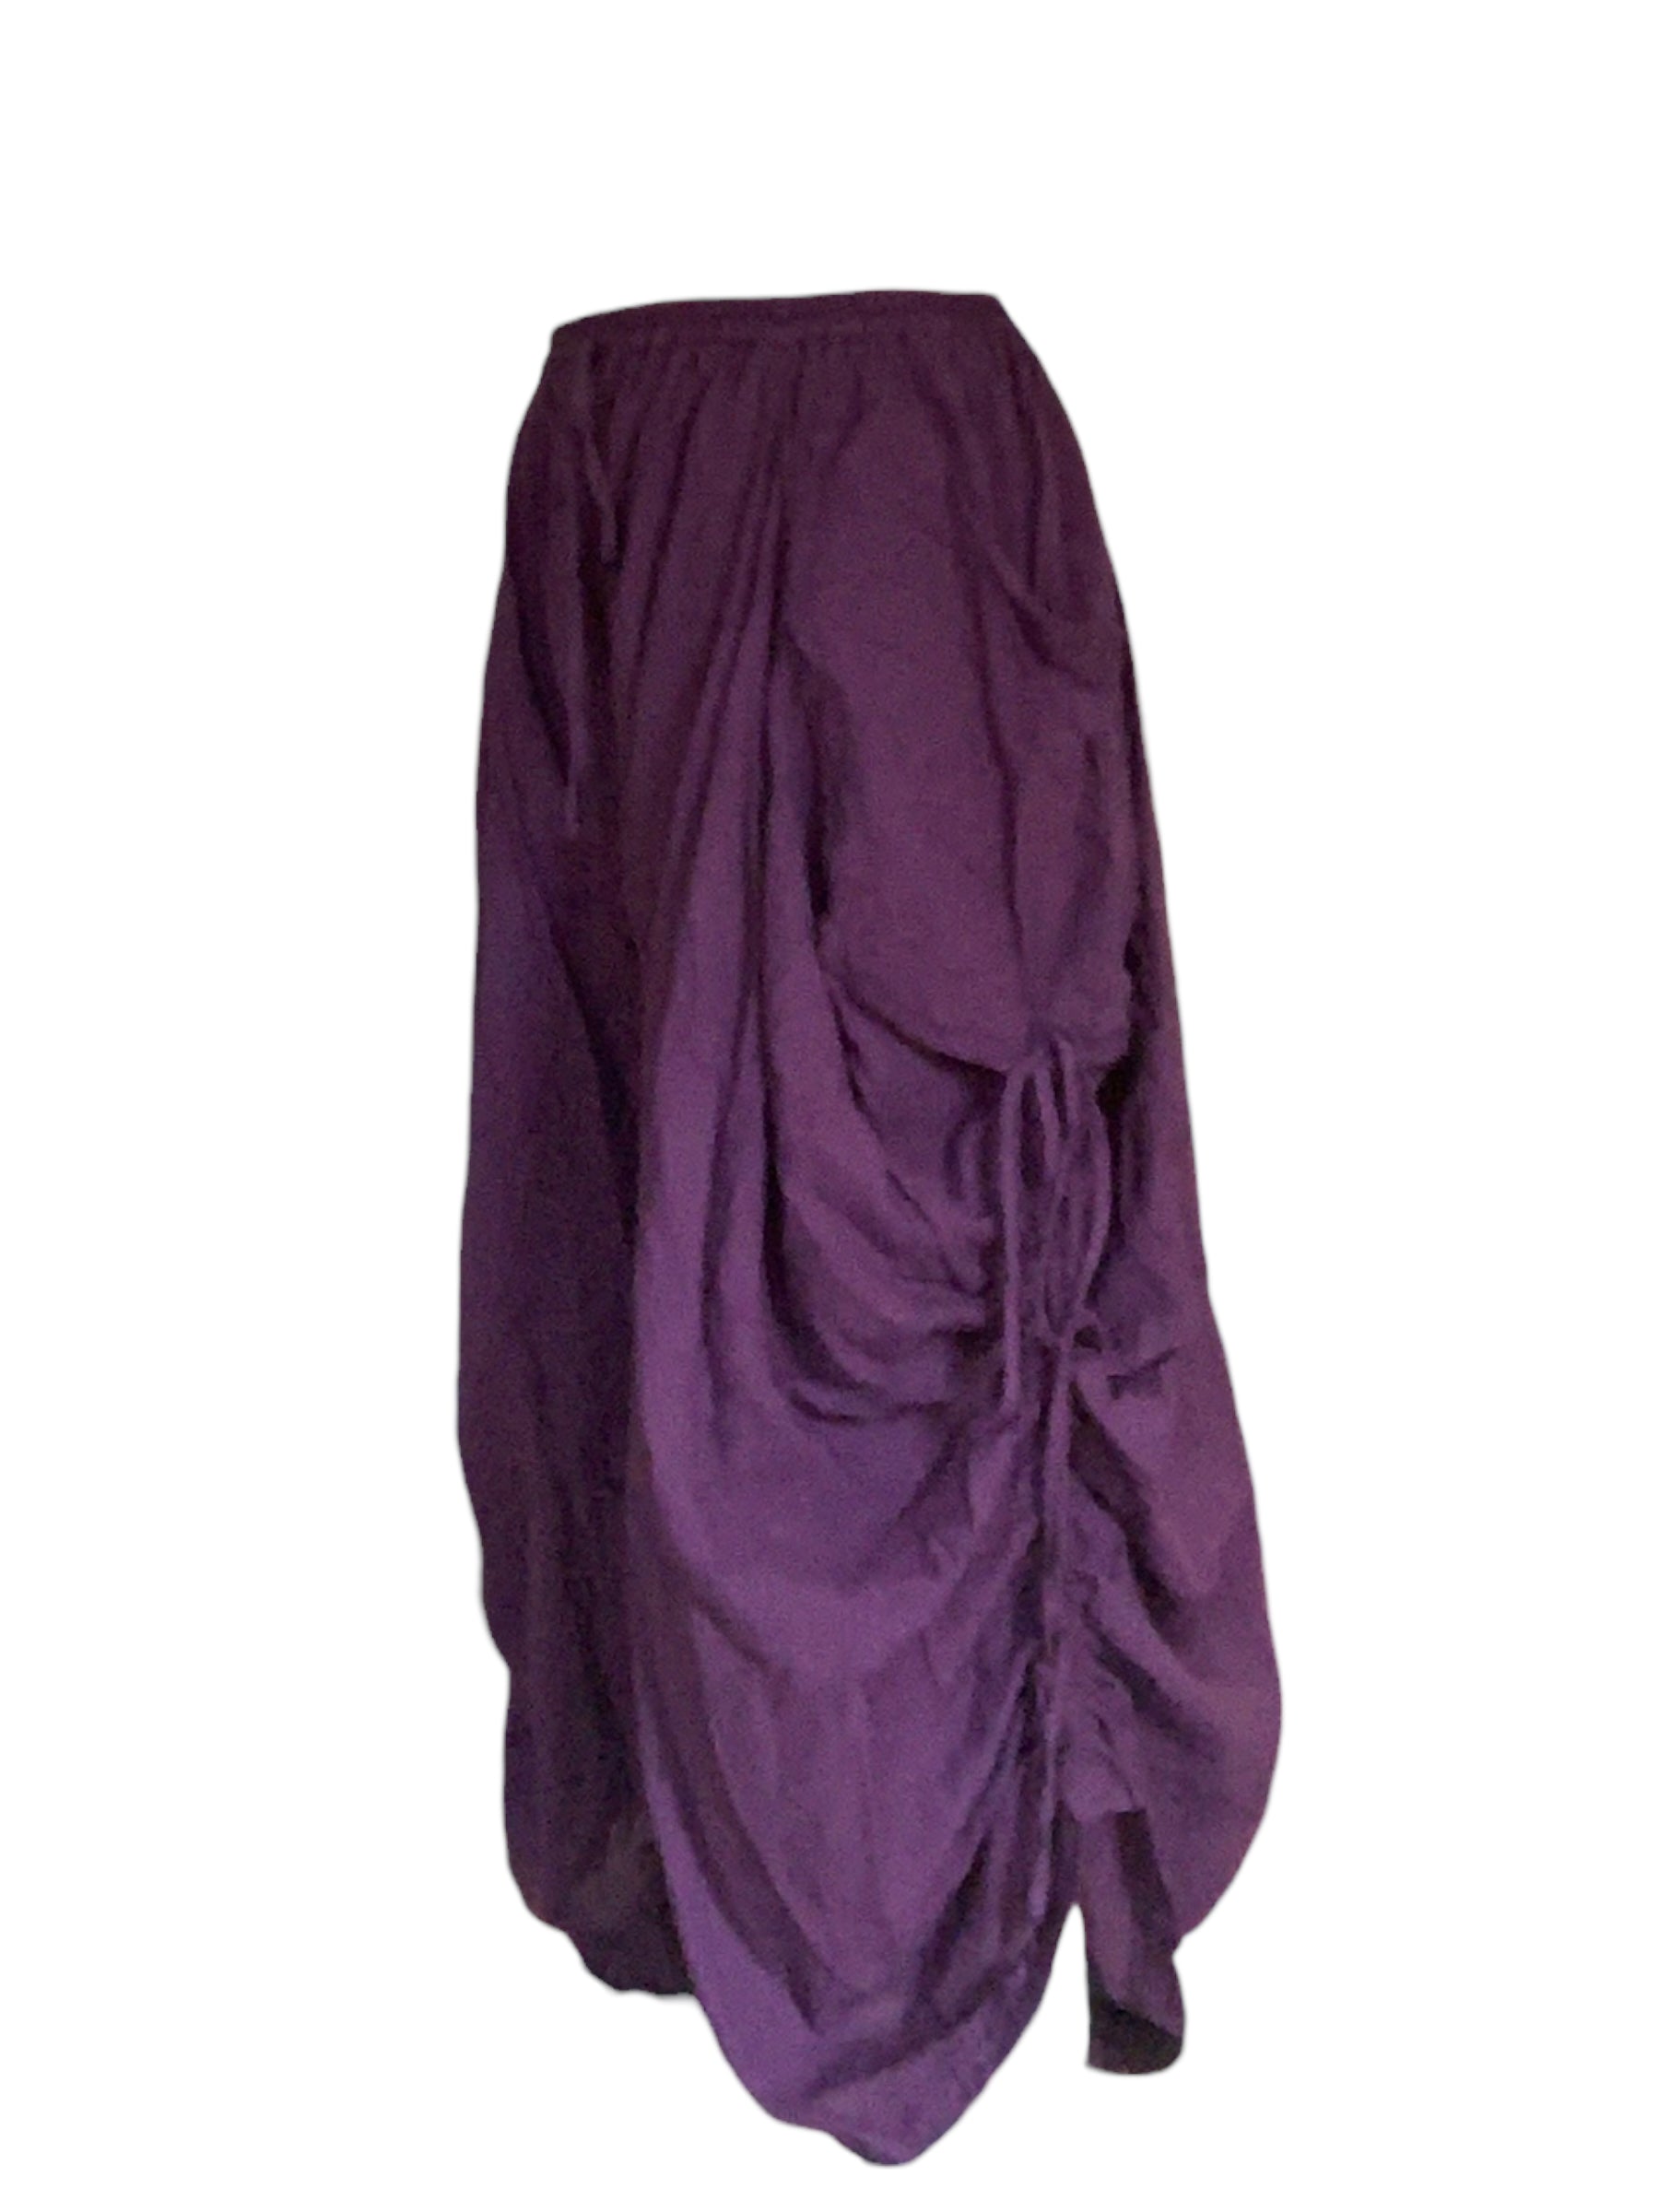 Purple Cotton Voile Tashi Versatile Pants/Skirt